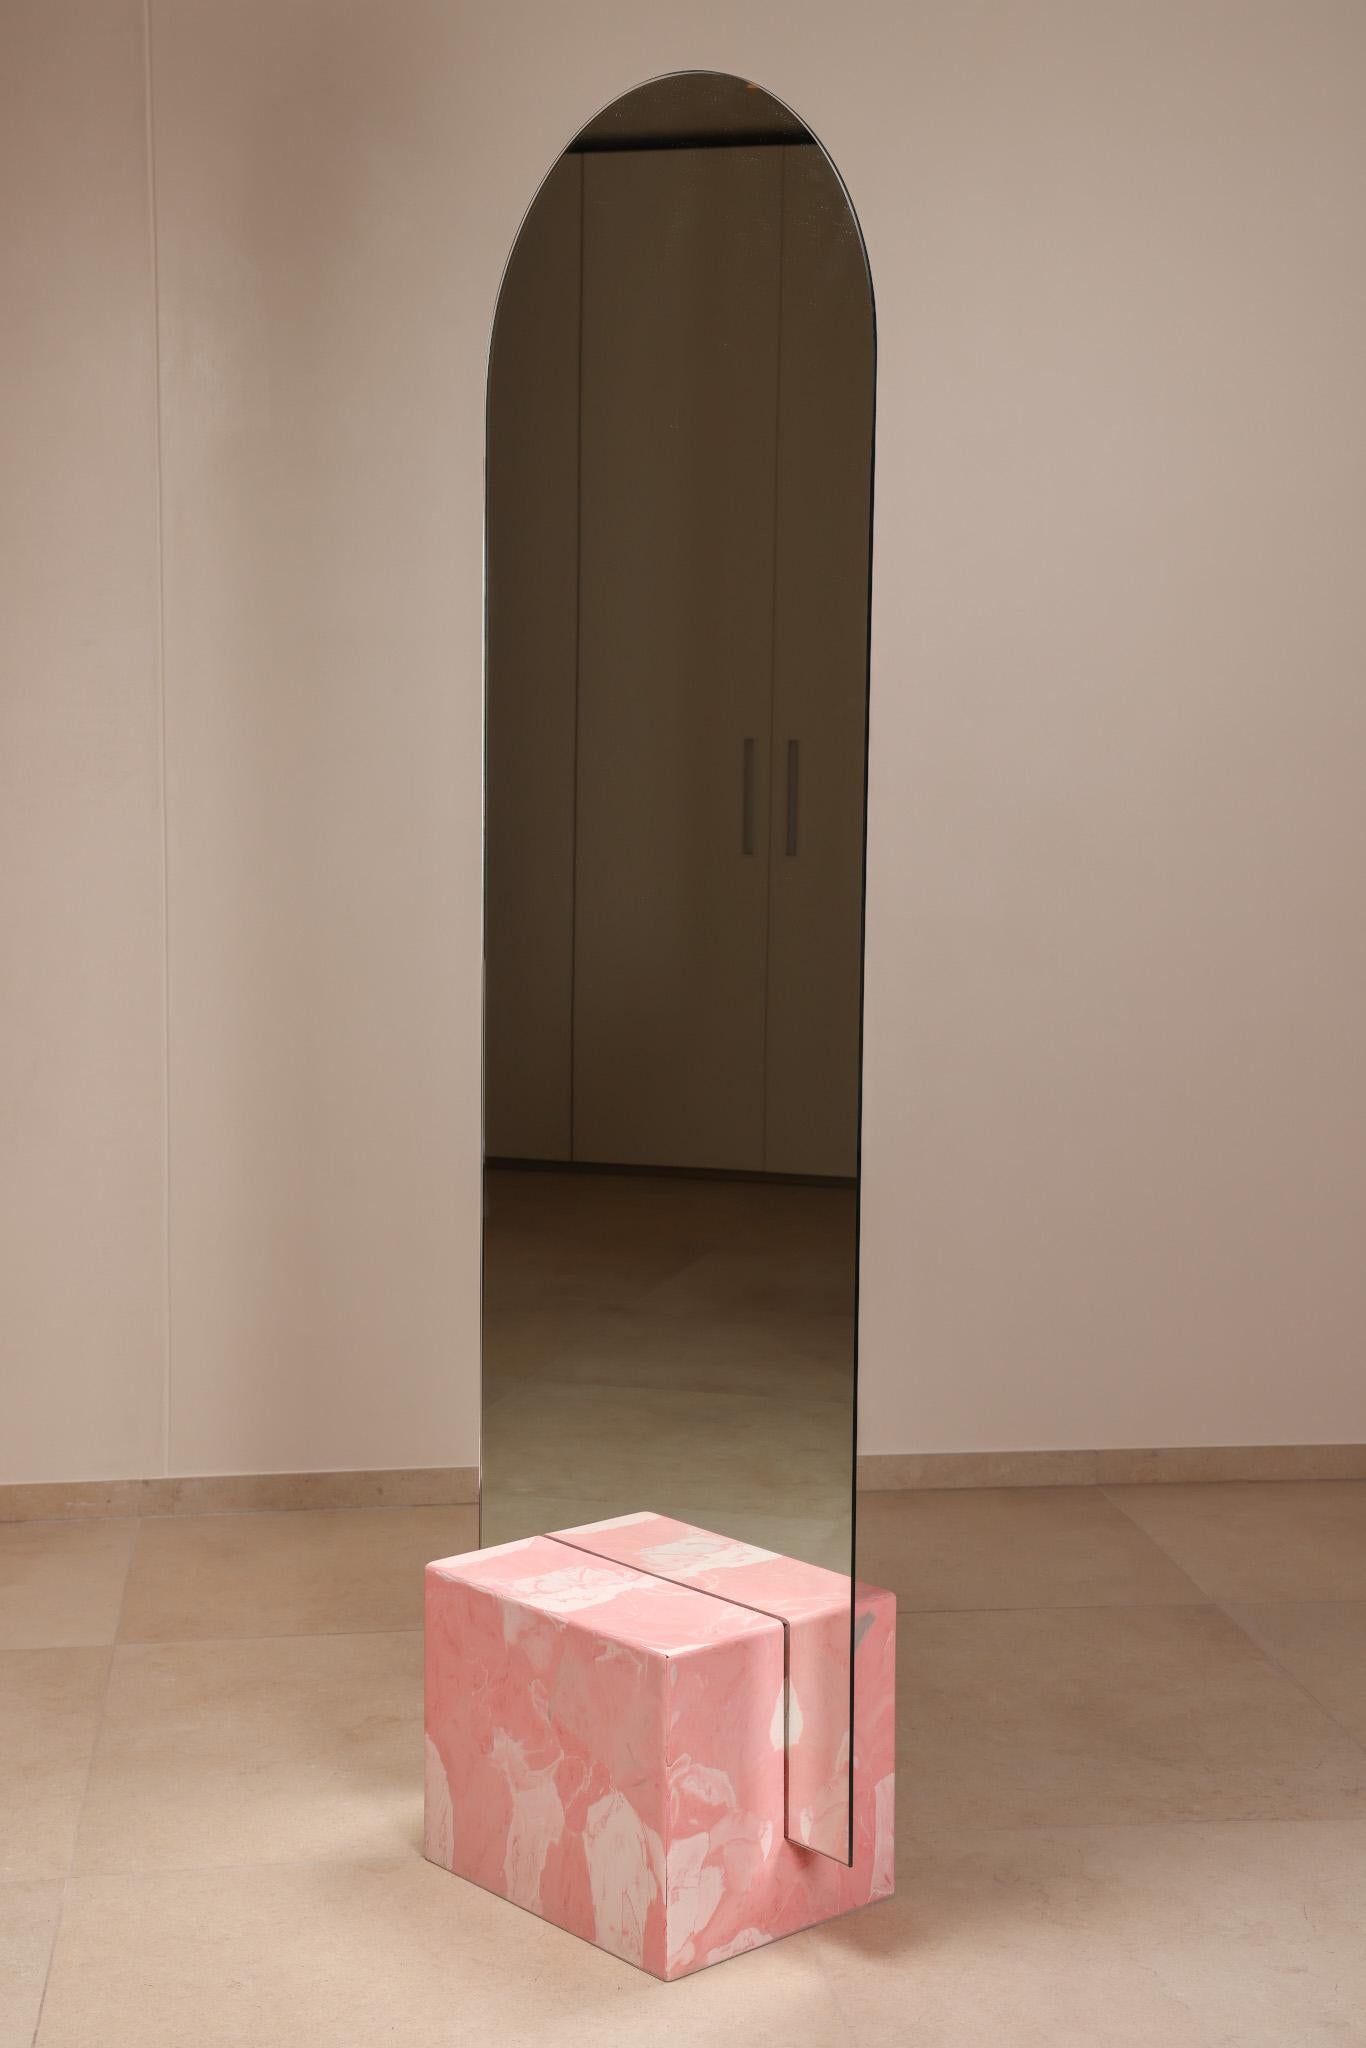 Miroir sur pied rose contemporain fabriqué à la main à partir de plastique 100% recyclé par Anqa Studios
Avec son fond en forme de pierre et la silhouette fragile de sa partie supérieure, le miroir ANQA Moonrise est une confluence moderne d'art et